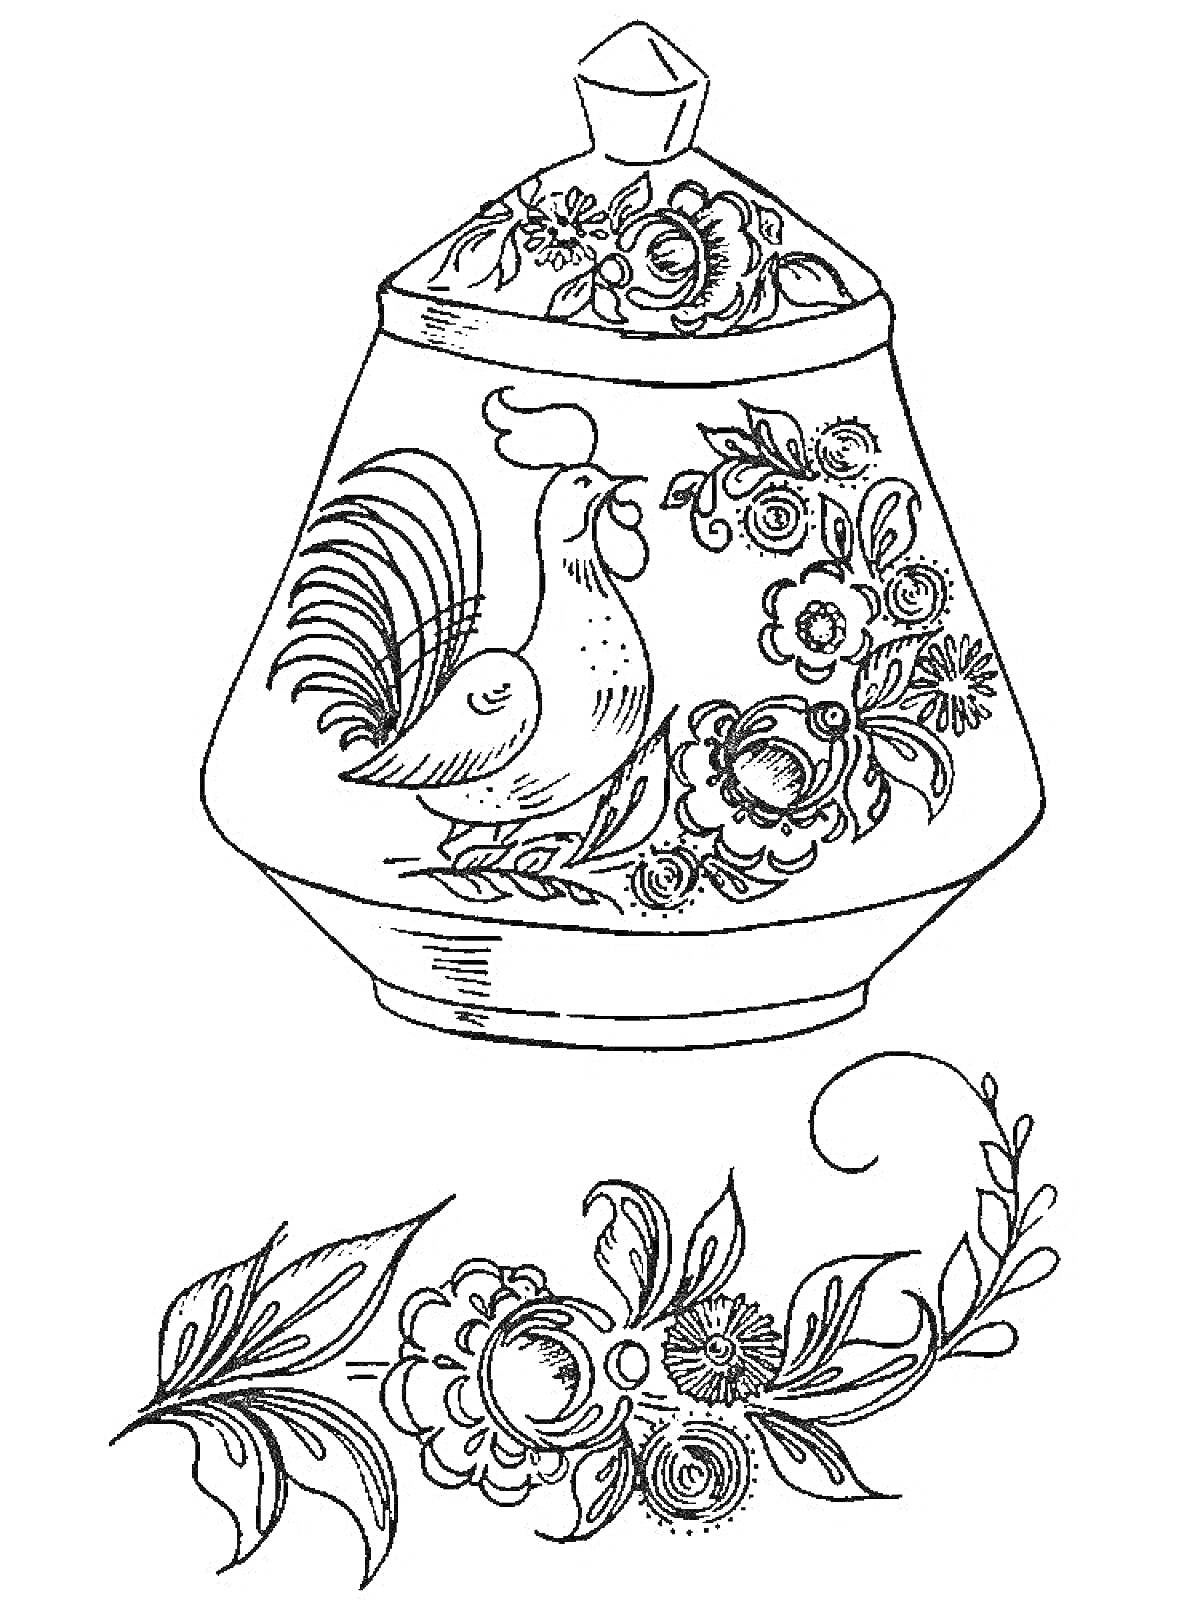 Раскраска Кувшин с крышкой, украшенный петухом и цветочным орнаментом